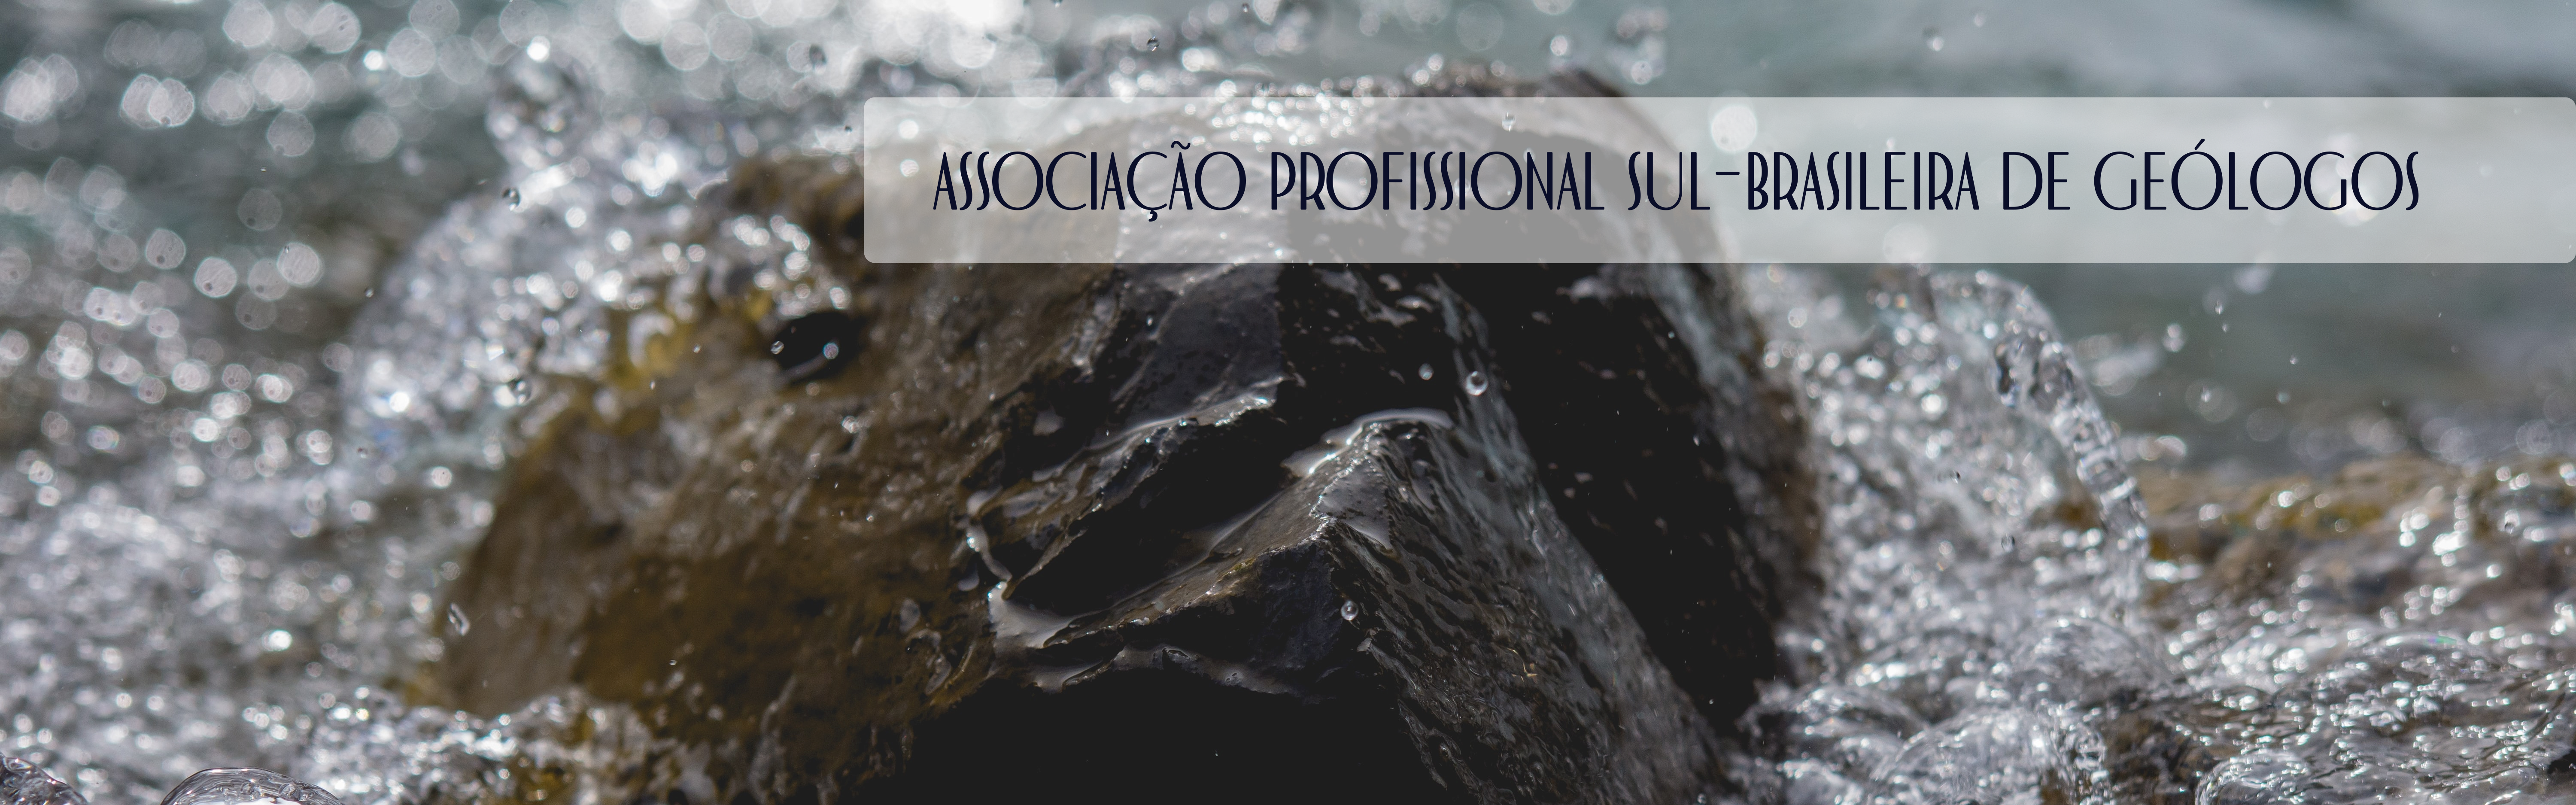 Associação Profissional Sul-brasileira de Geólogos